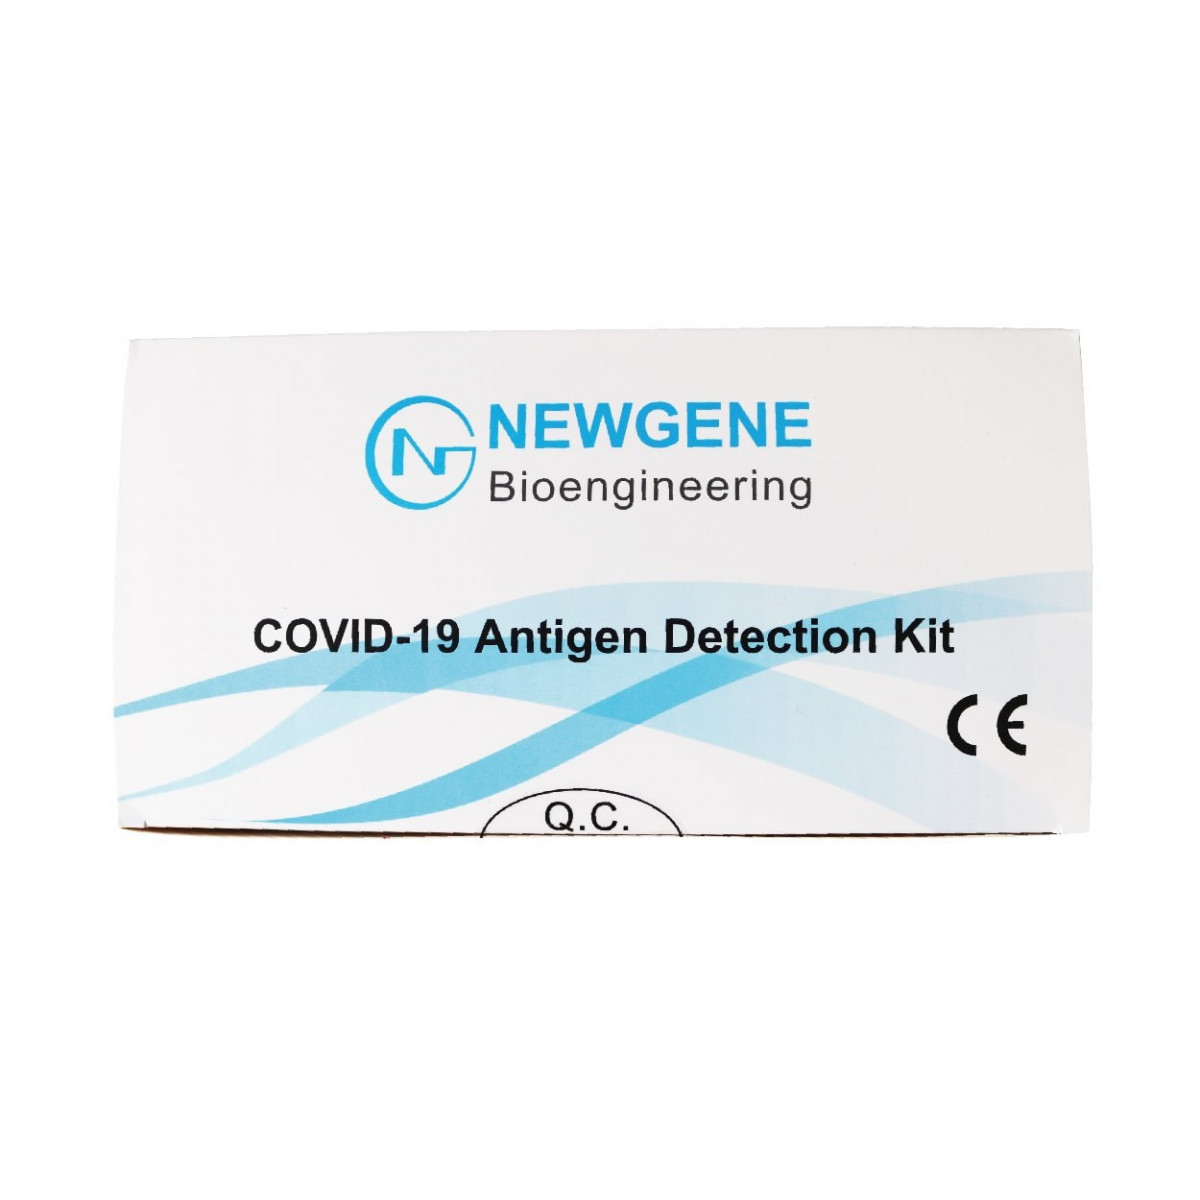 Achat test rapide antigénique COVID-19